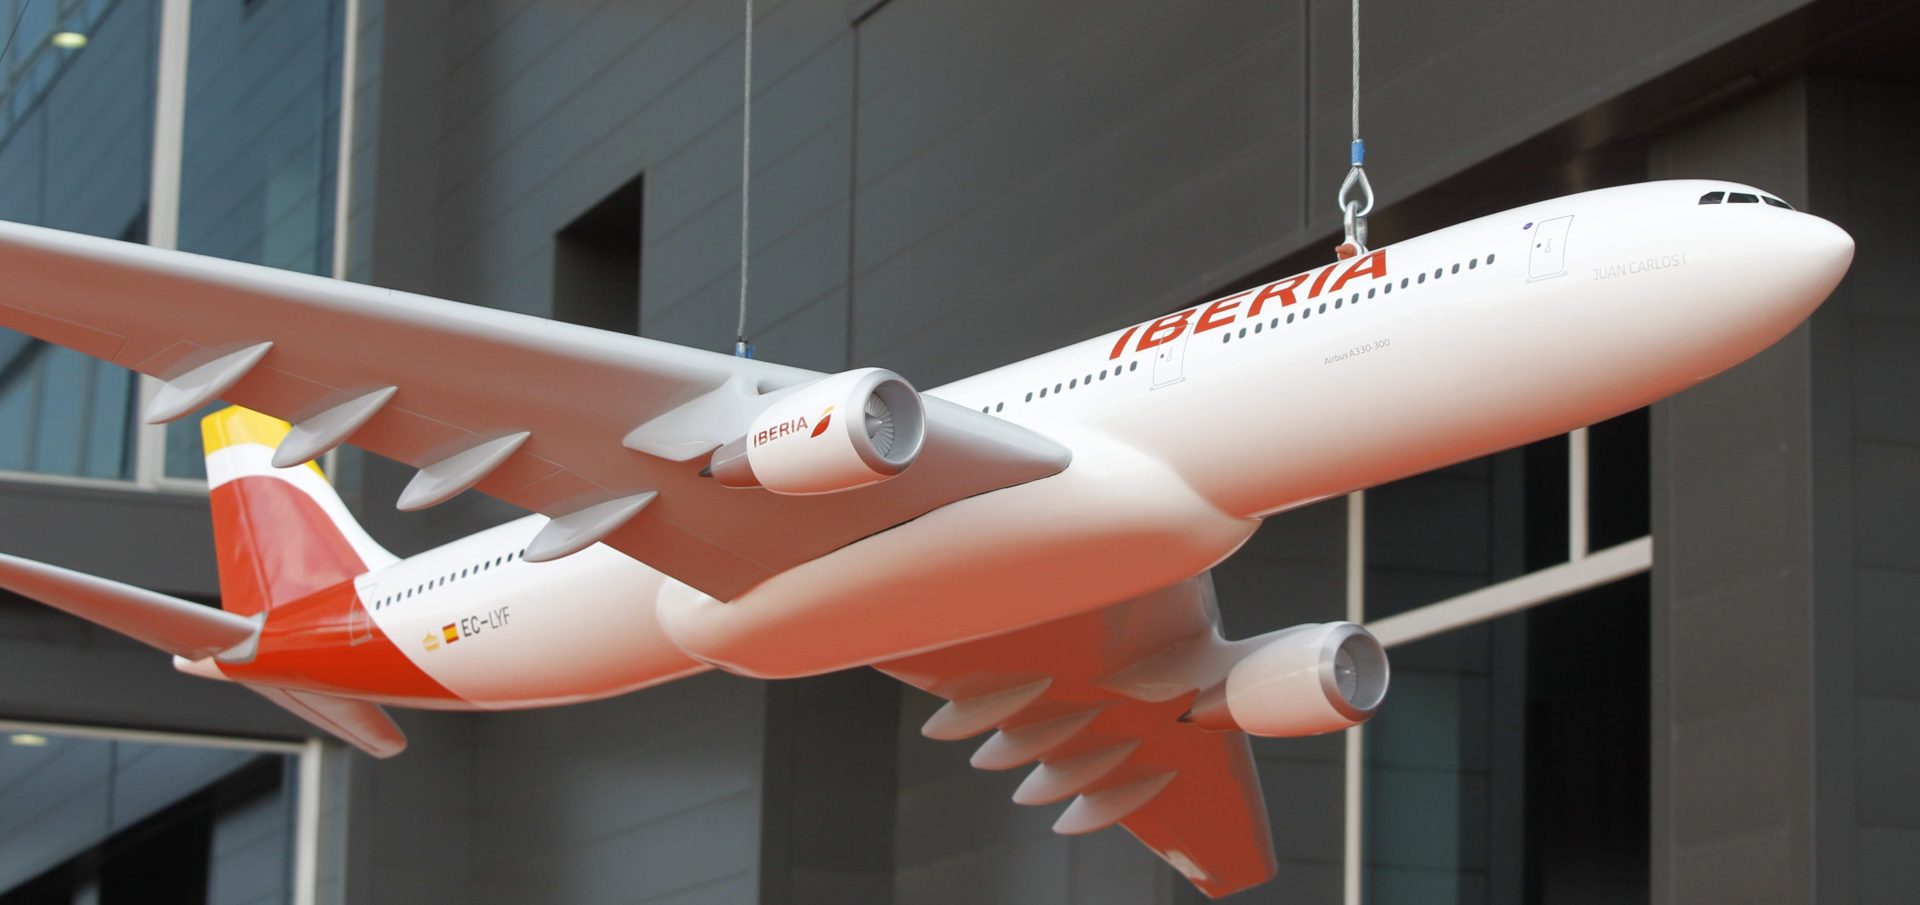 Maqueta de avión con la nueva imagen corporativa de Iberia. EFE/Fernando Alvarado.